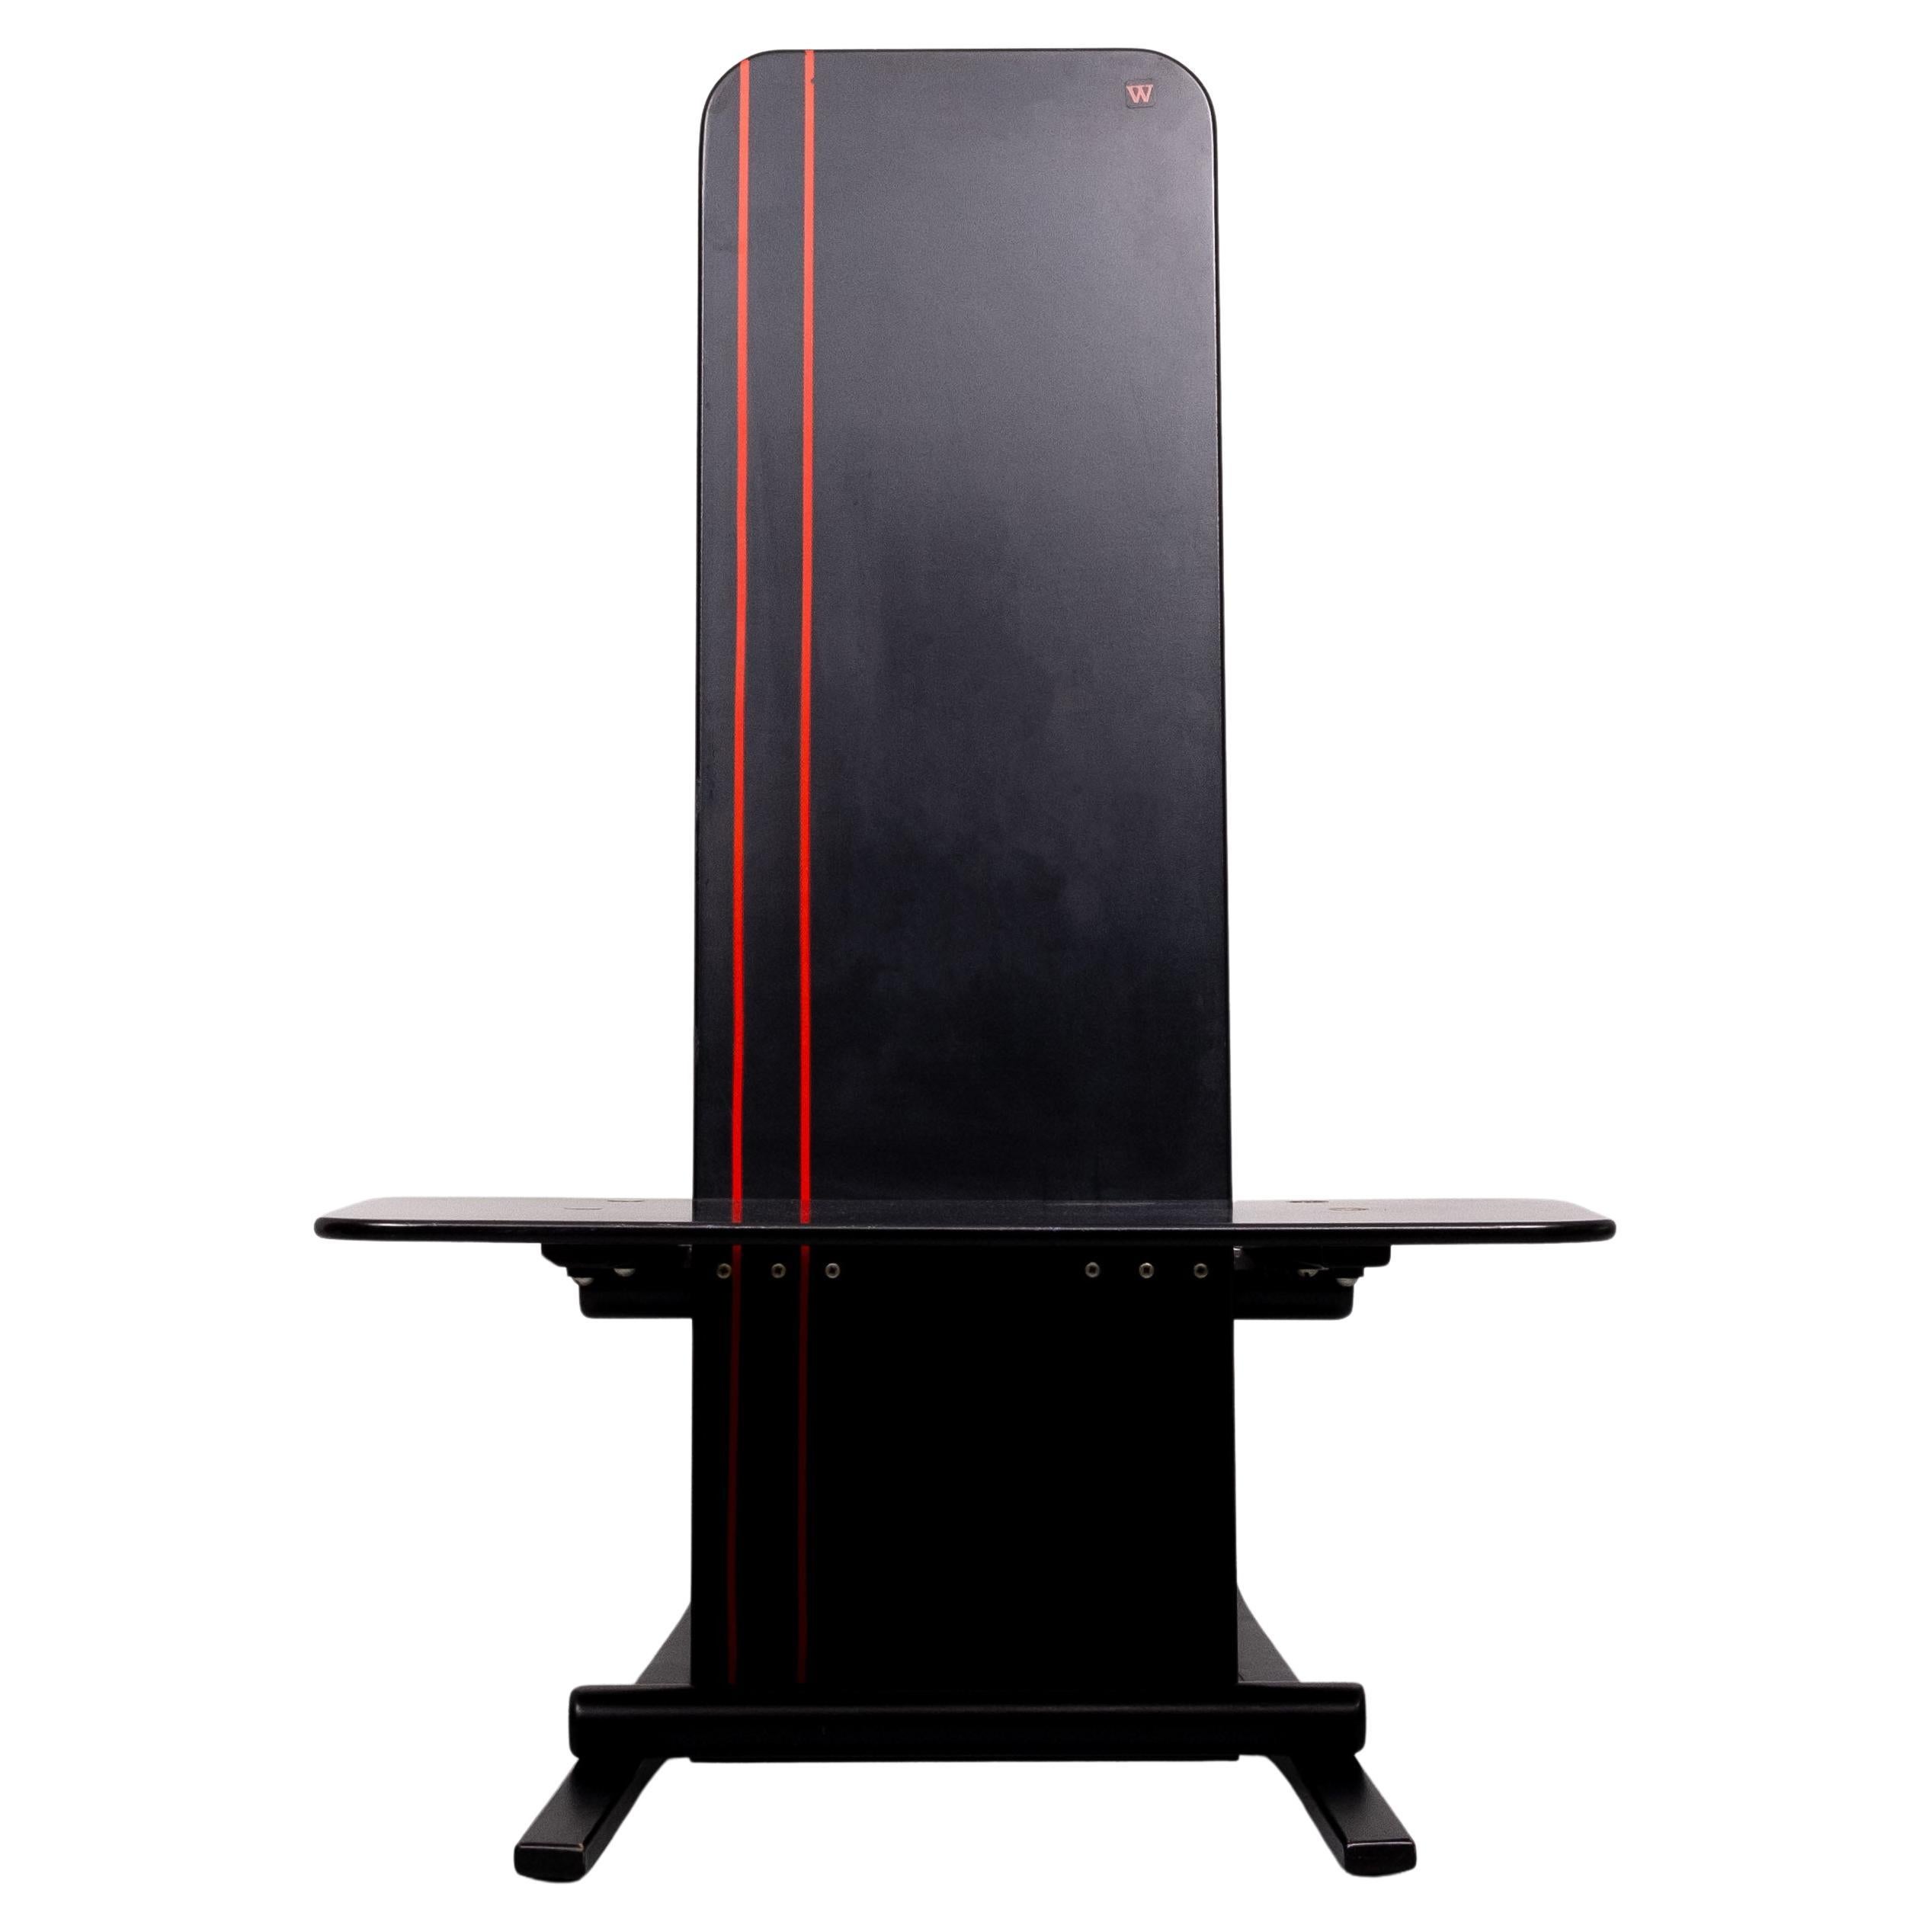 Cette superbe chaise Vintage By a une forme et un design très élégants. La chaise est construite en contreplaqué avec une finition originale peinte en noir avec un motif de lignes parallèles rouges.
Le dessous de la chaise porte le Label 